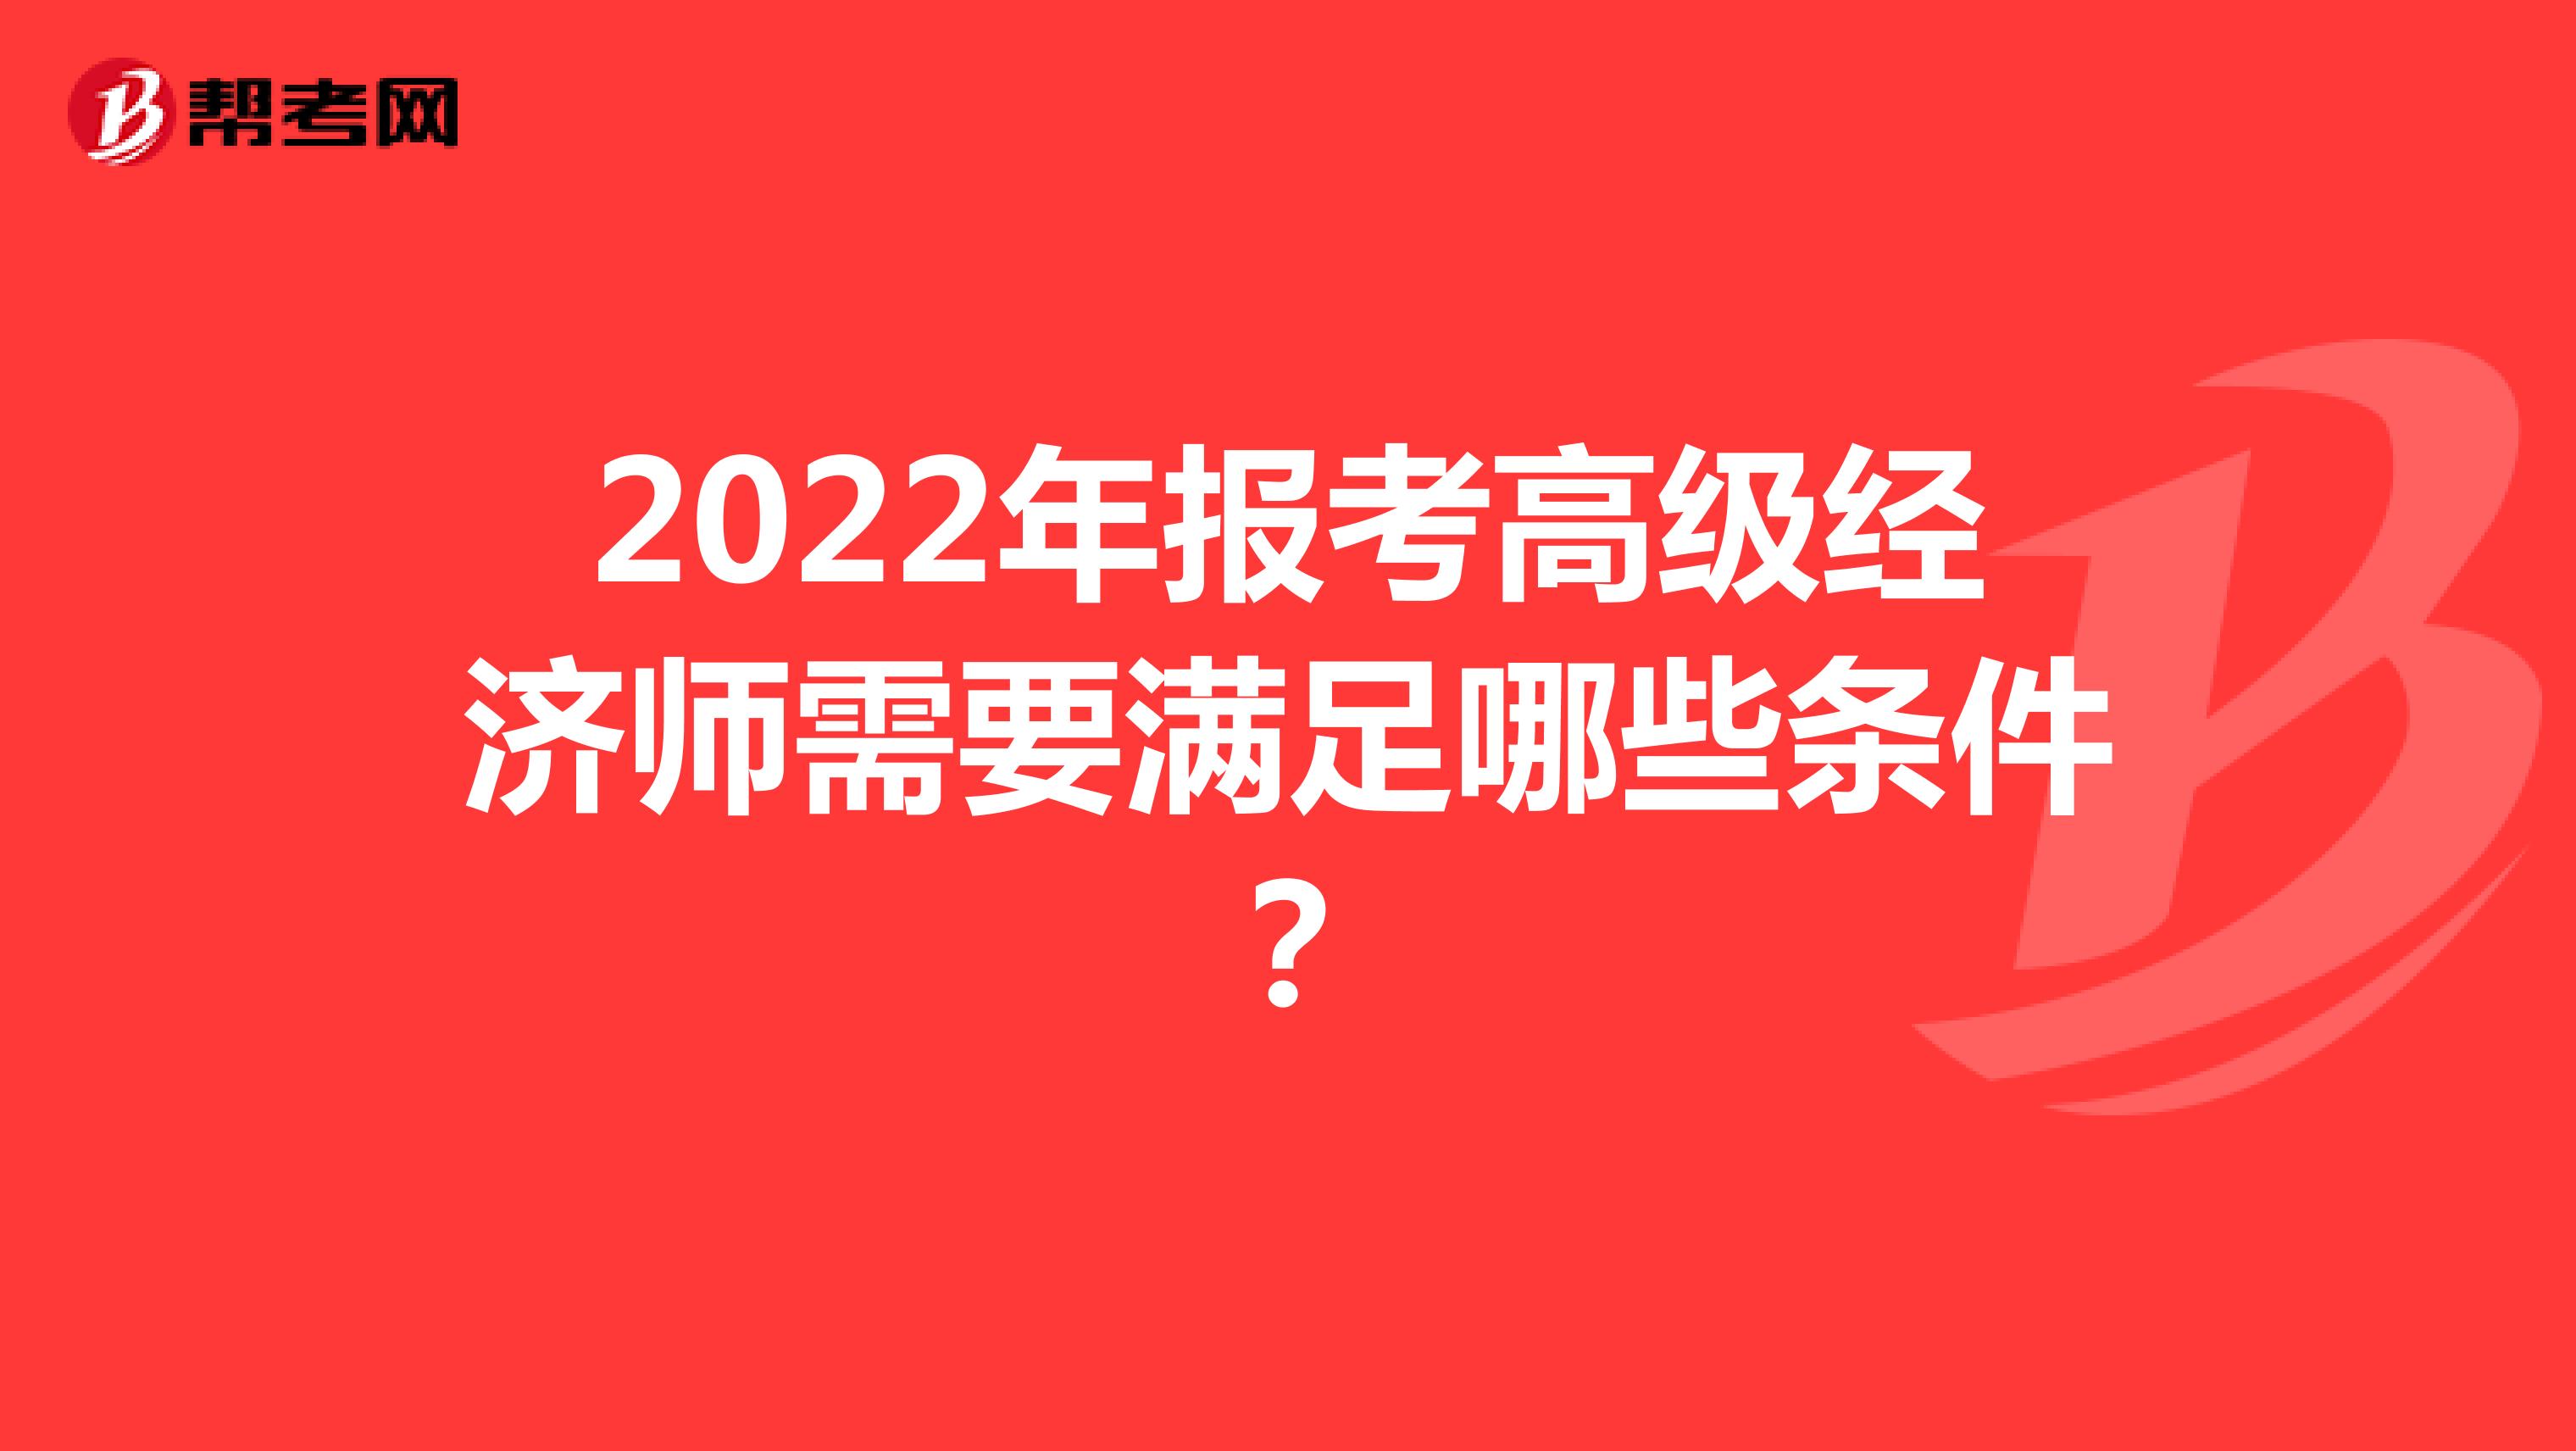 2022年报考高级经济师需要满足哪些条件？